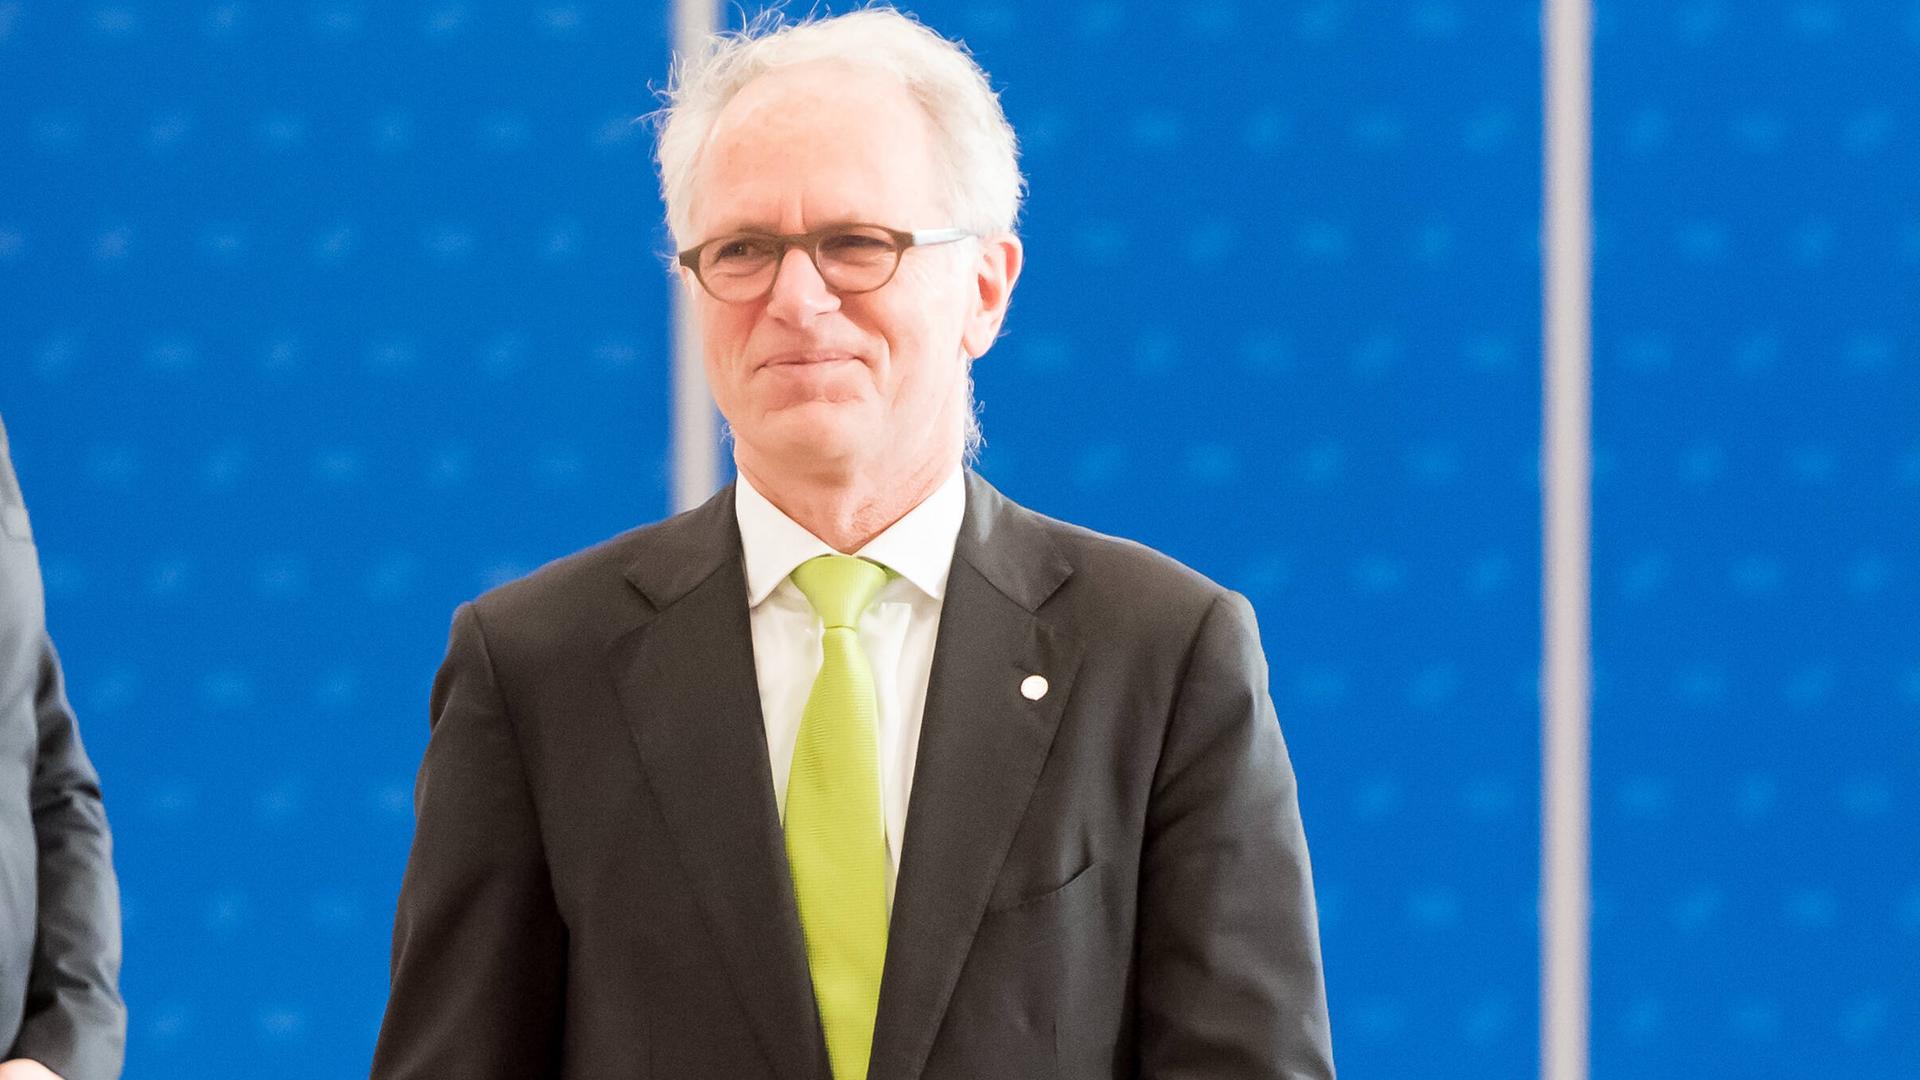 Das Foto zeigt Wirtschaftsstaatssekretär Udo Philipp. Er trägt einen dunklen Anzug mit gelber Krawatte.